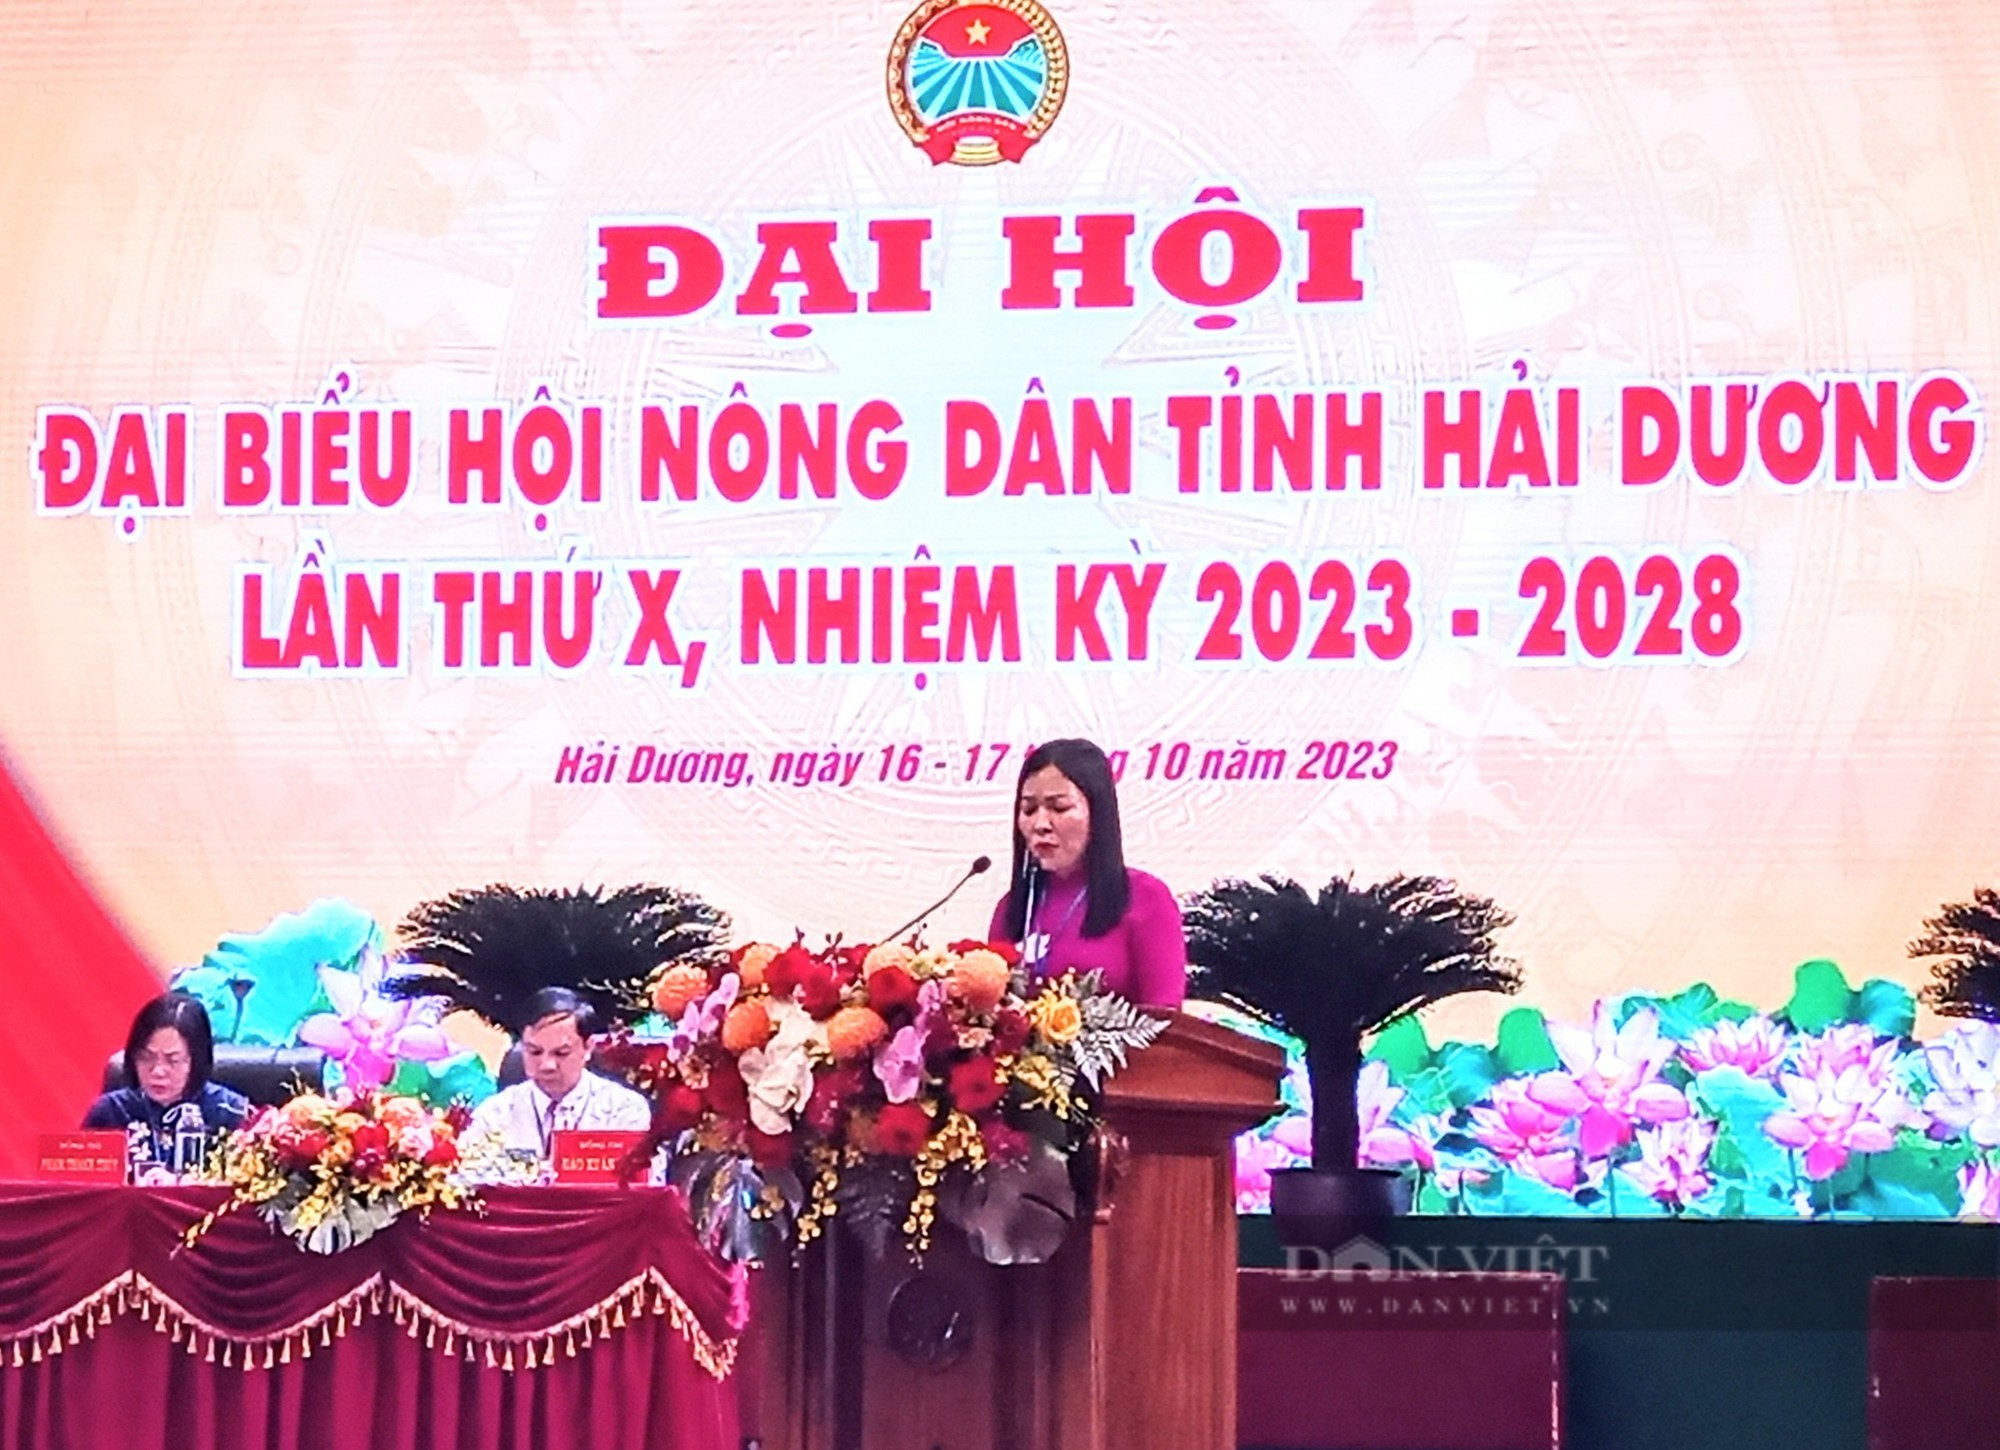 Tiến sĩ Trịnh Văn Thiện, Bí thư Huyện uỷ Thanh Hà được bầu giữ chức Chủ tịch Hội Nông dân tỉnh Hải Dương - Ảnh 2.